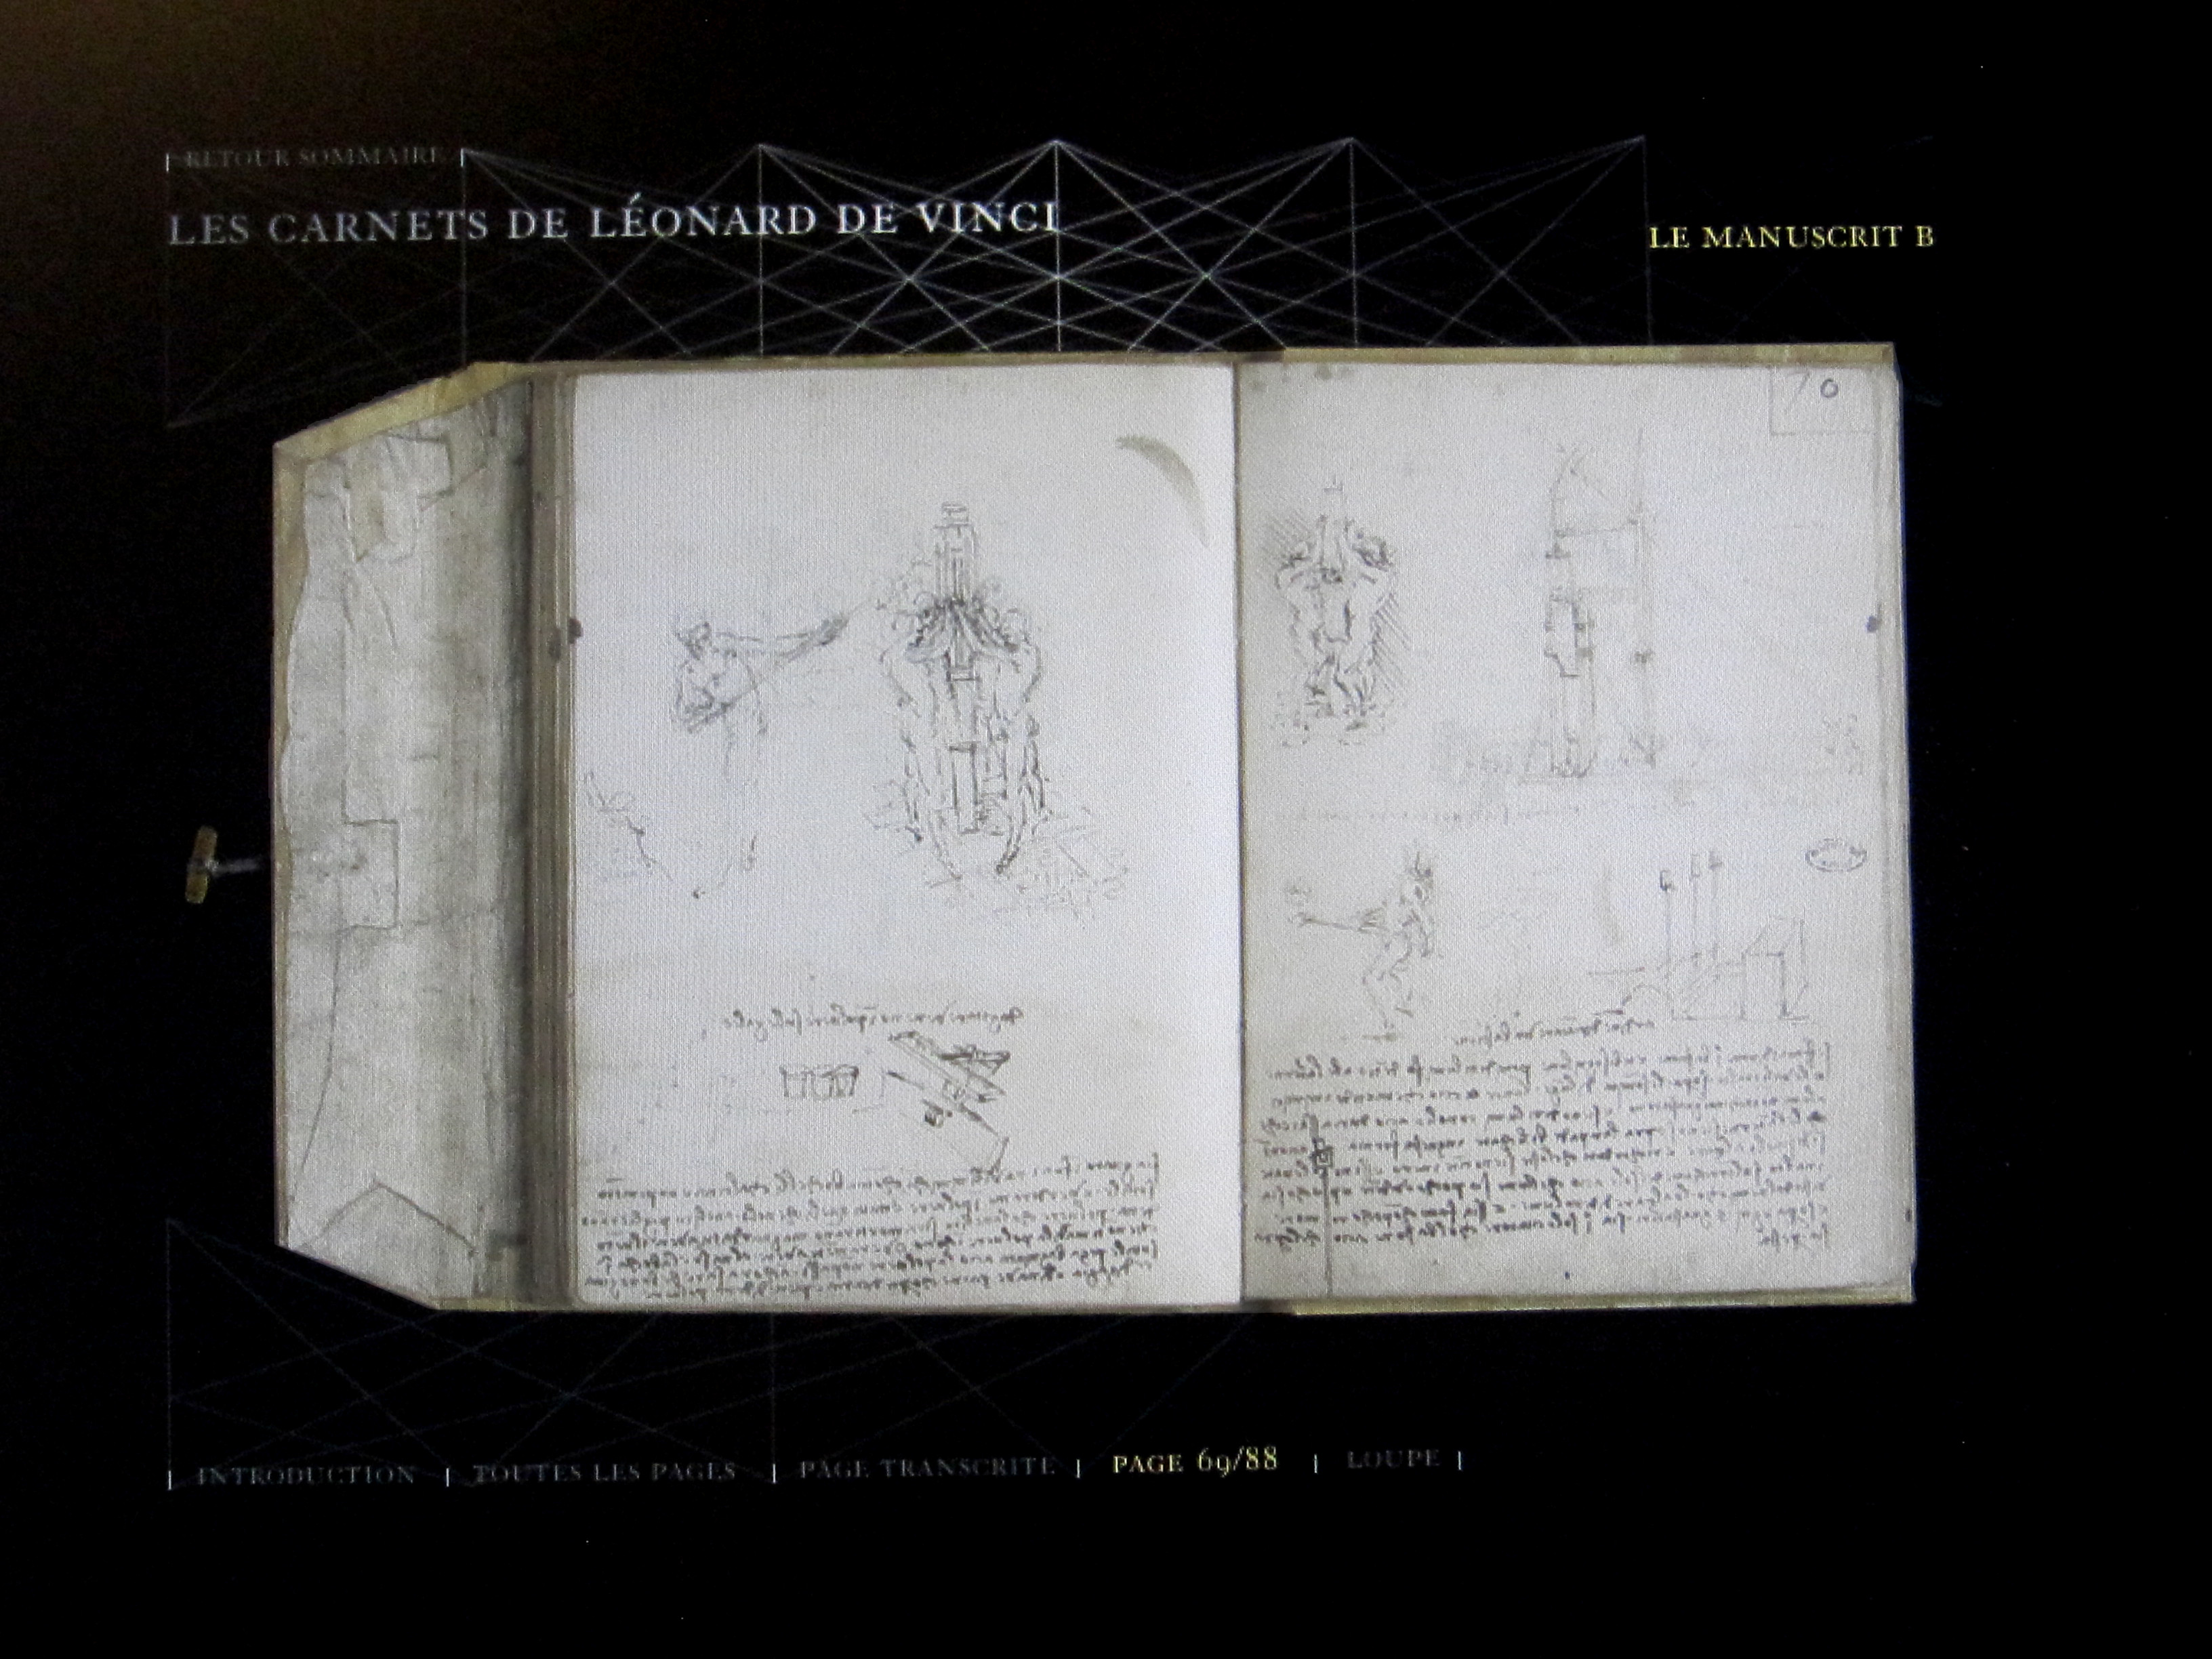 Aperçu du DVD intéractif Les carnets de Léonard de Vinci. © RMN-GP